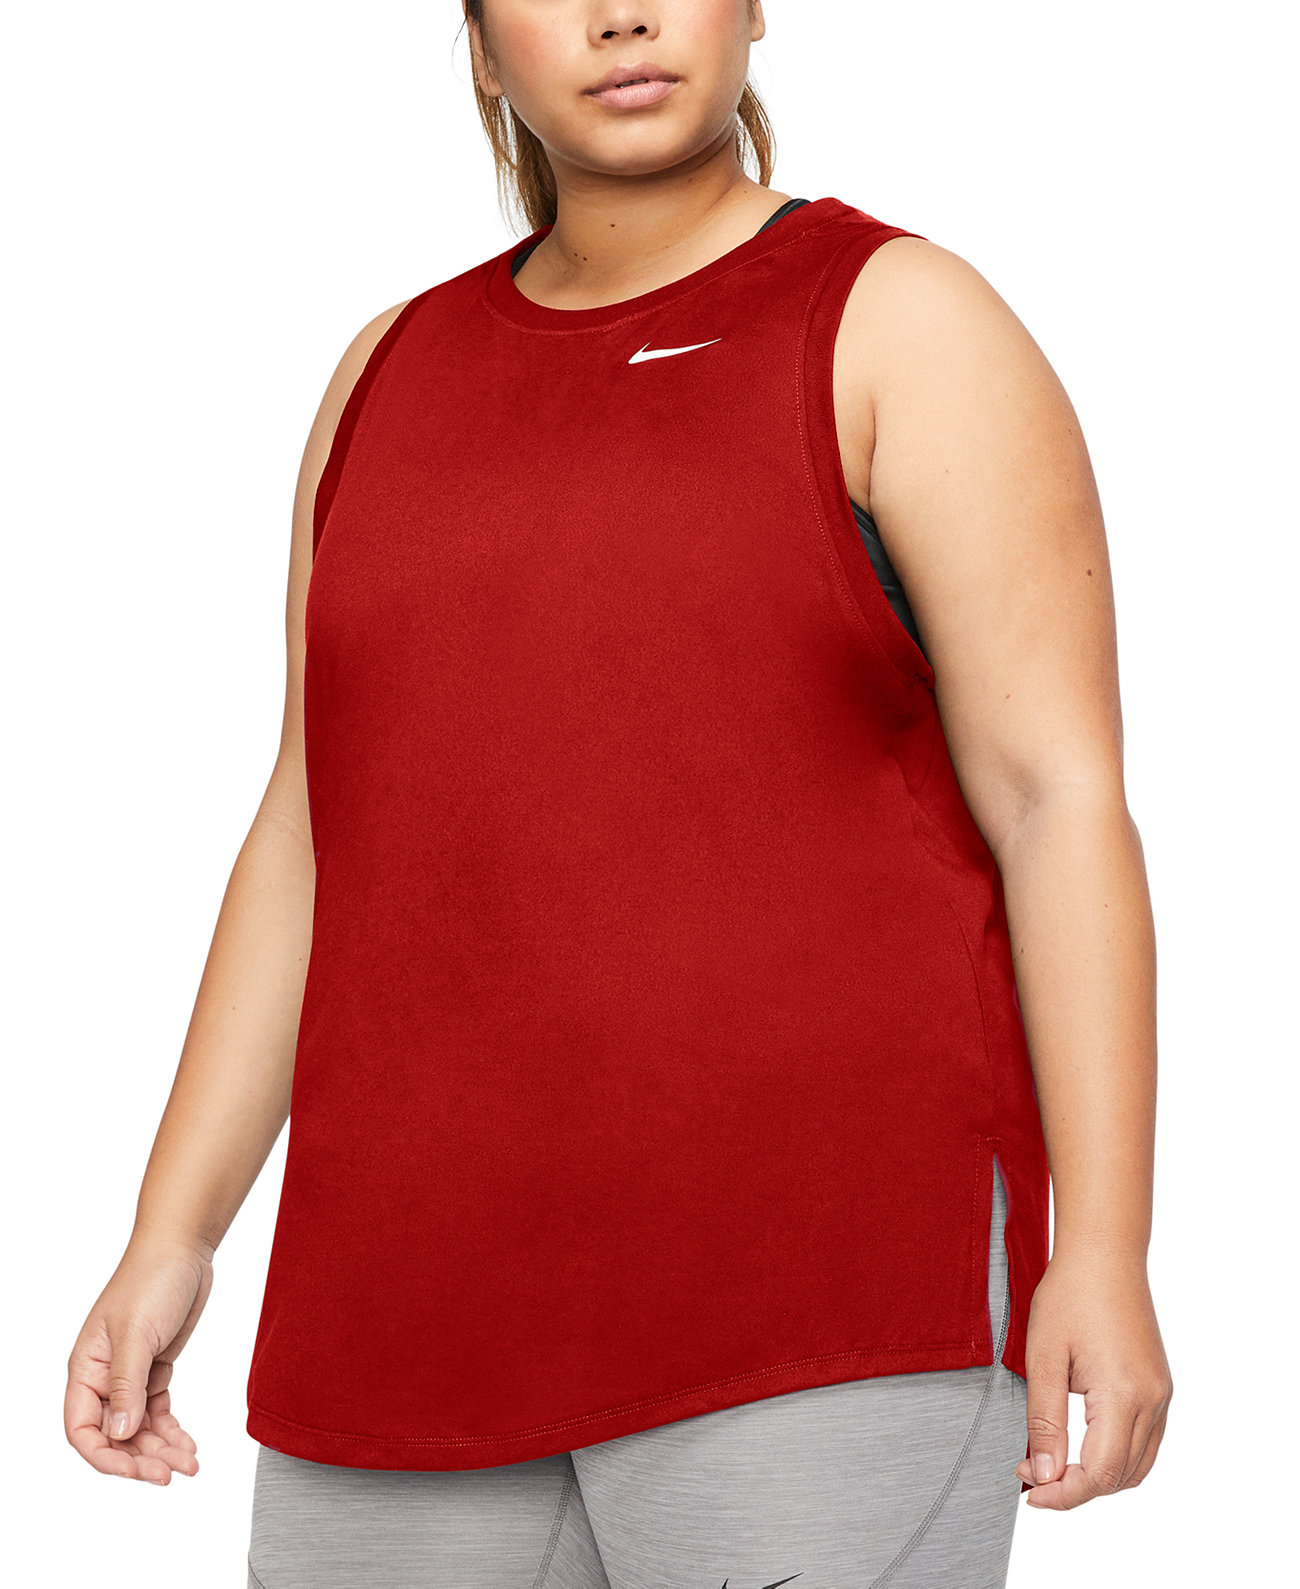 Тренировочная майка Swoosh плюс размер Nike